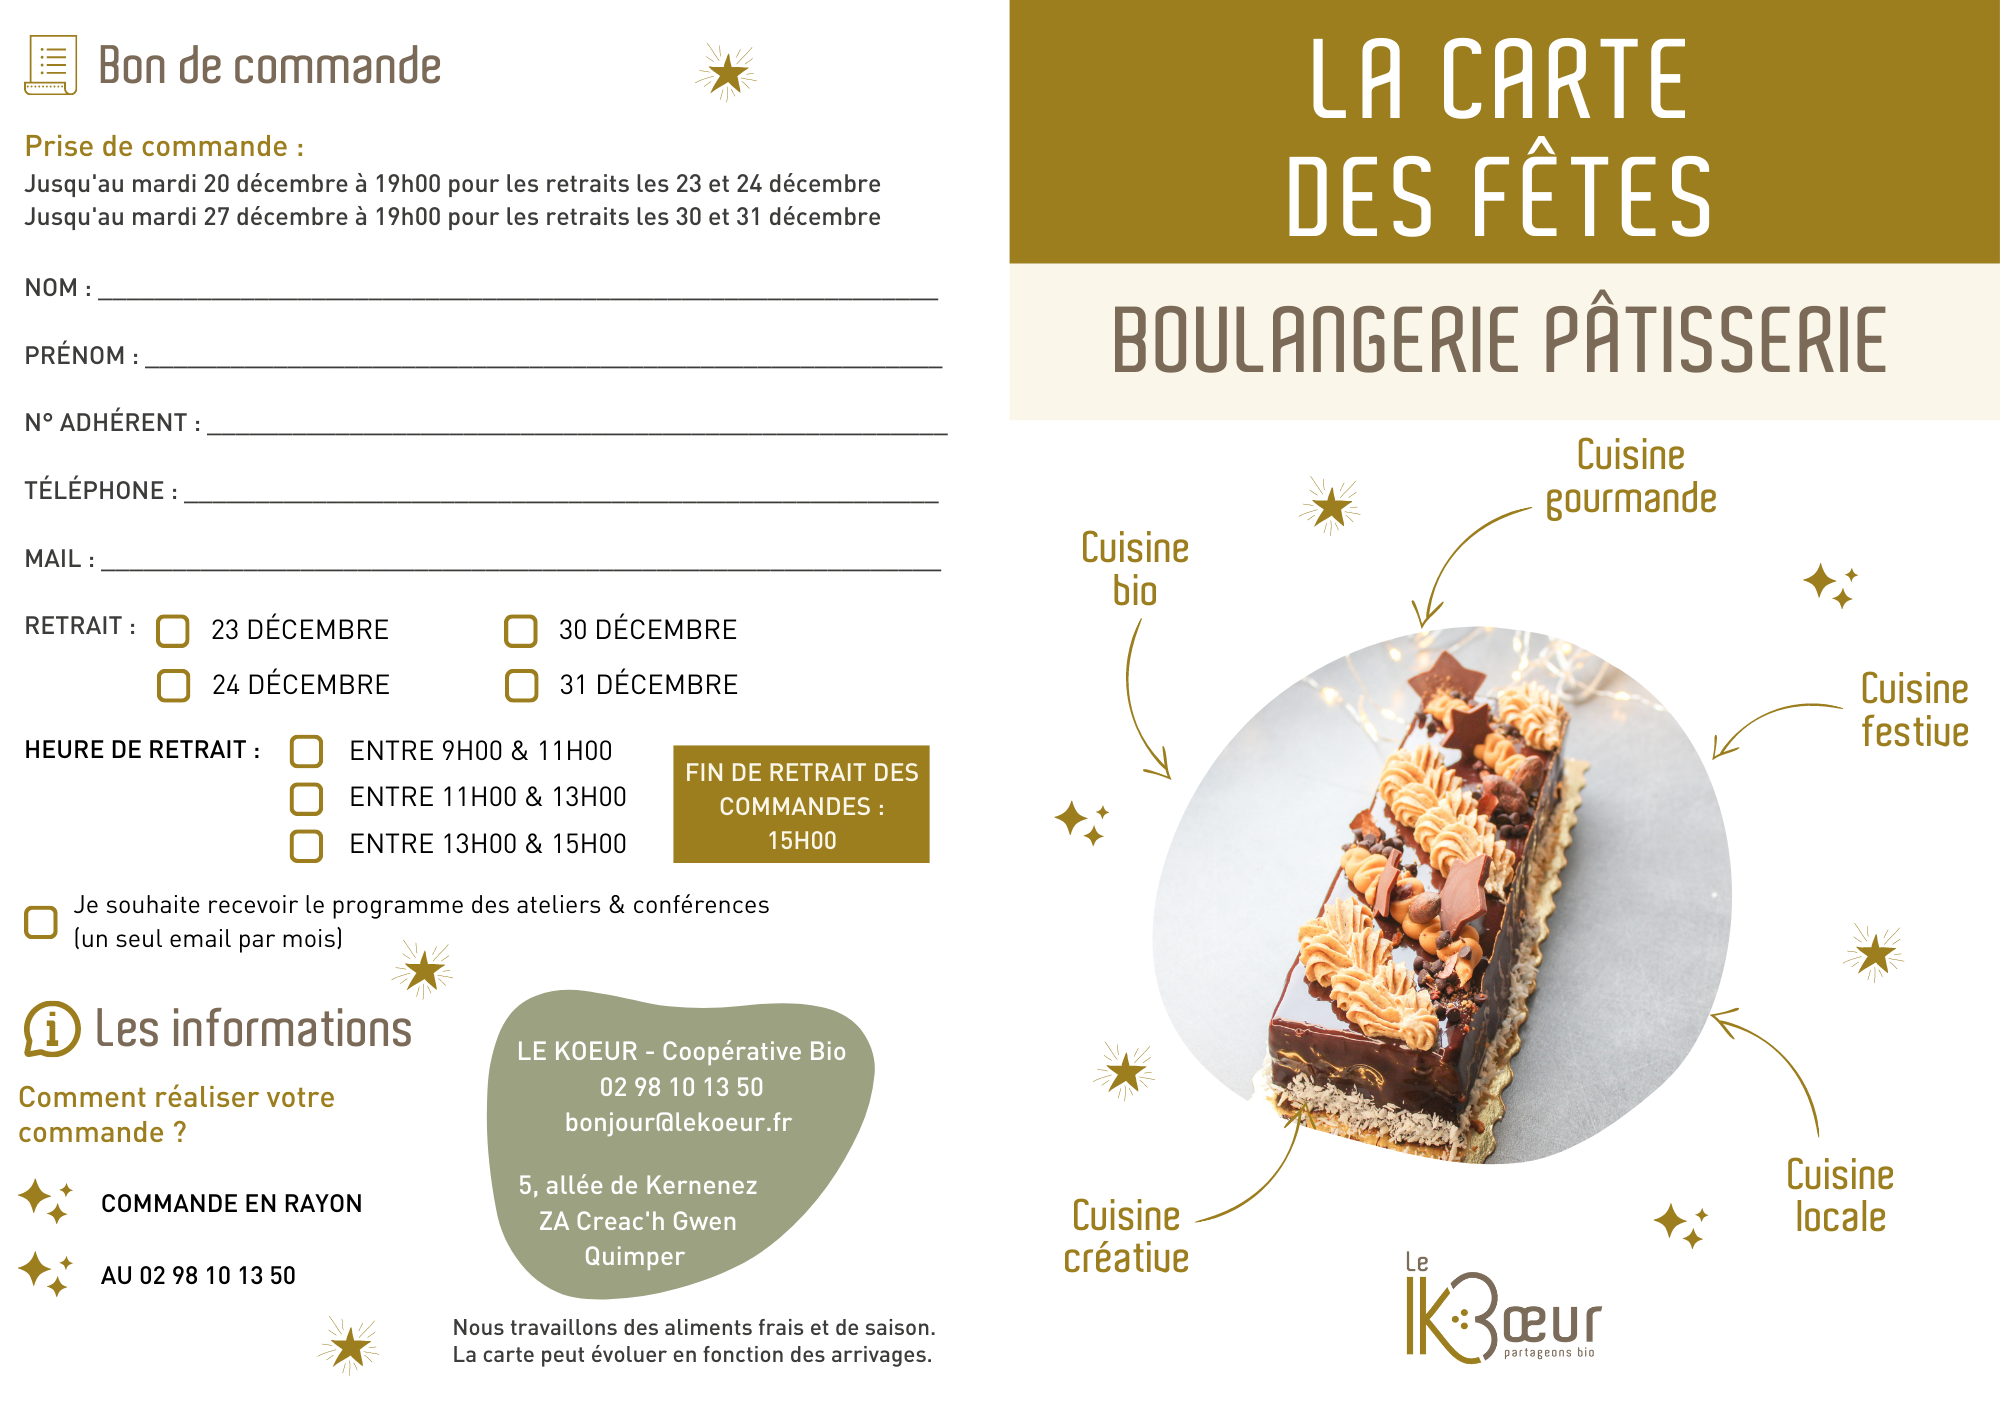 Carte des fêtes - Boulangerie pâtisserie - Page 1